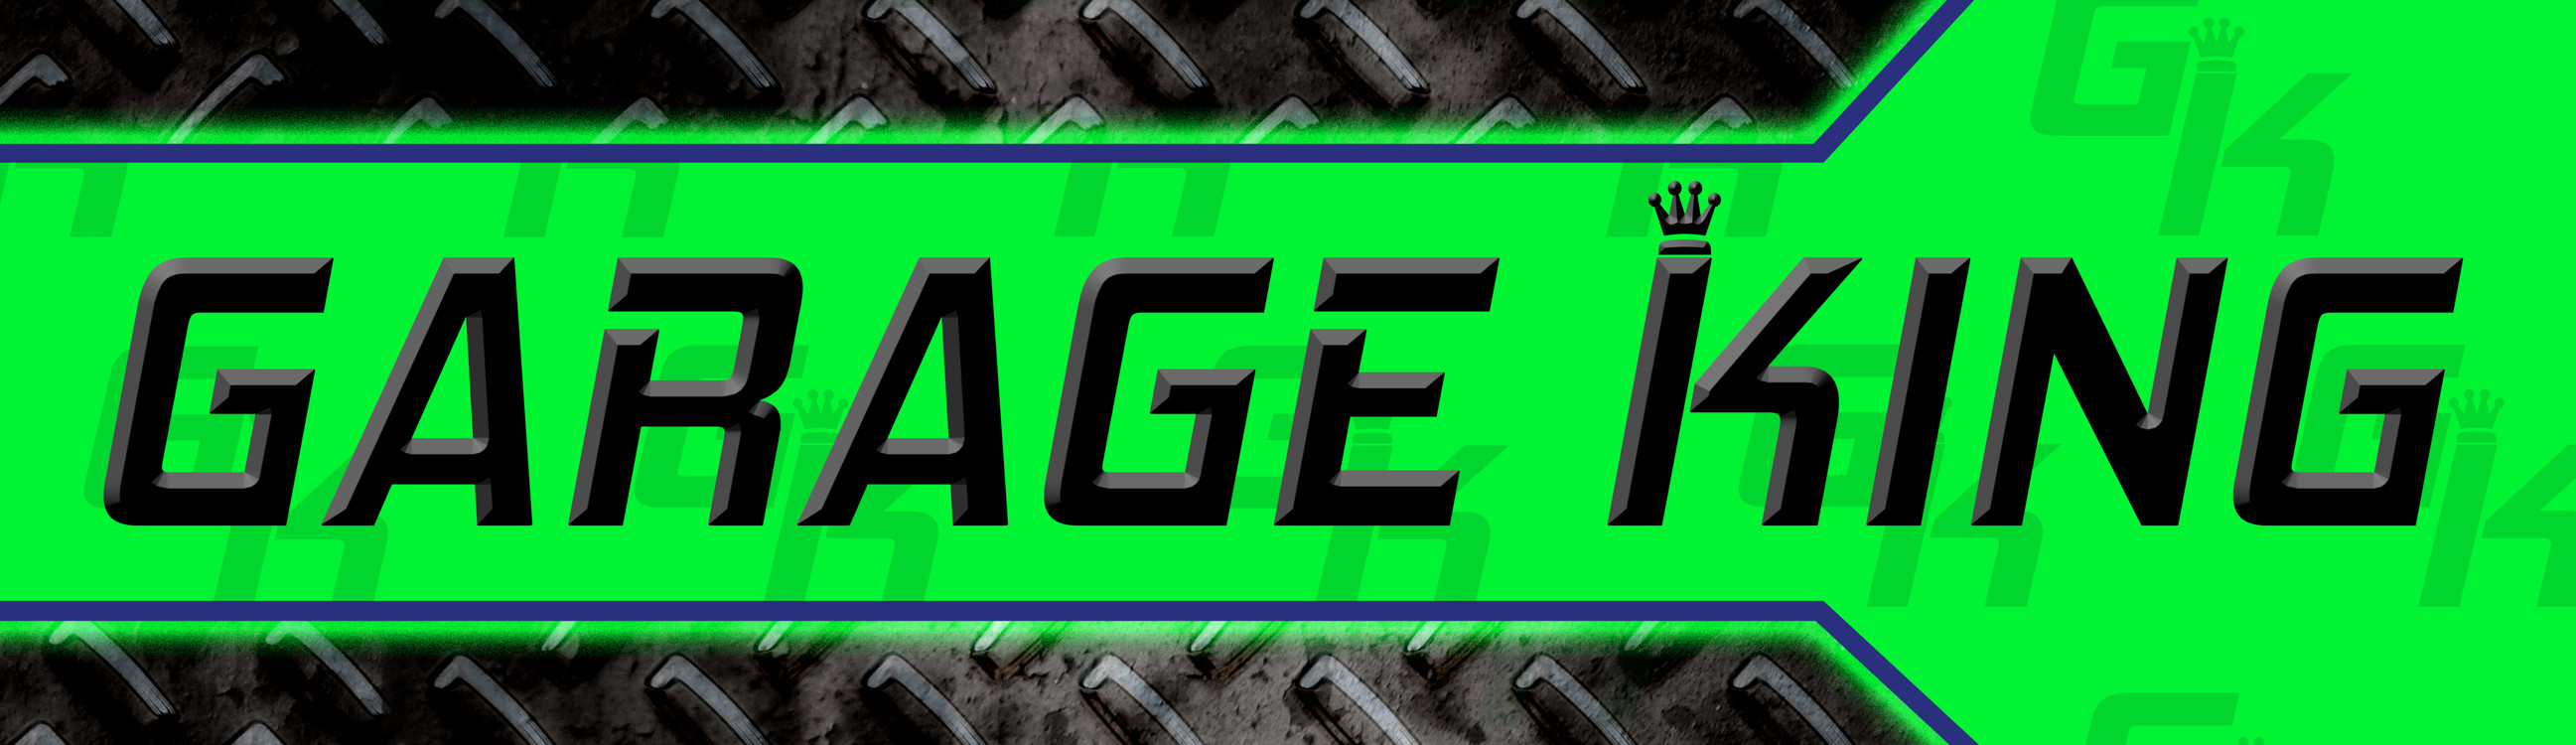 Garage King Logo